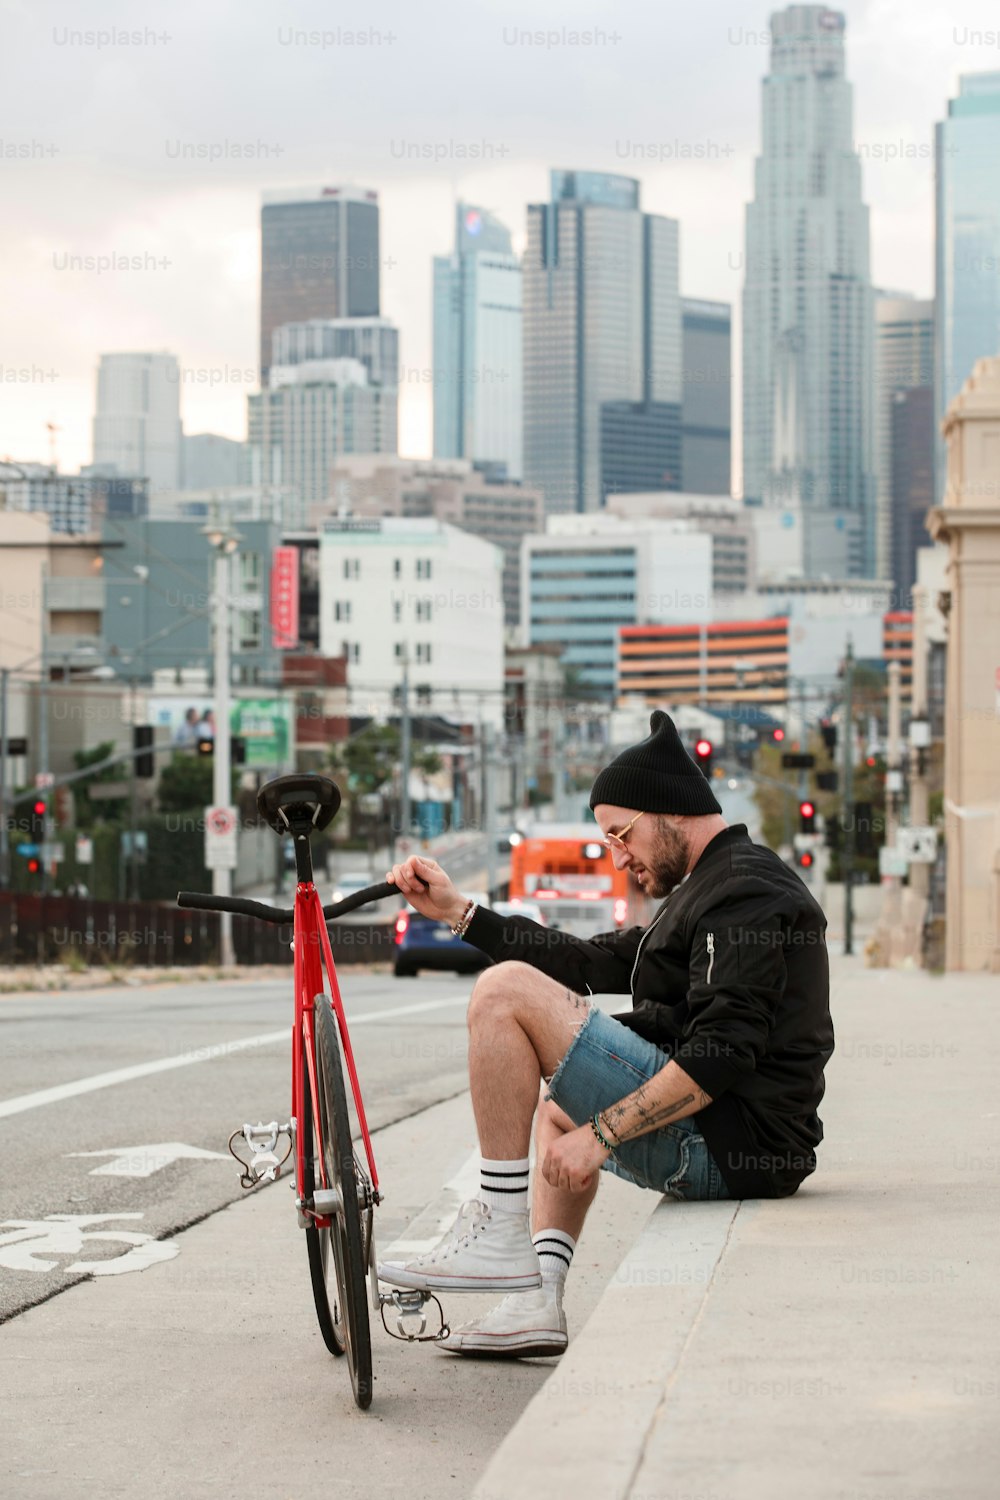 Un uomo seduto sul ciglio di una strada accanto a una bicicletta